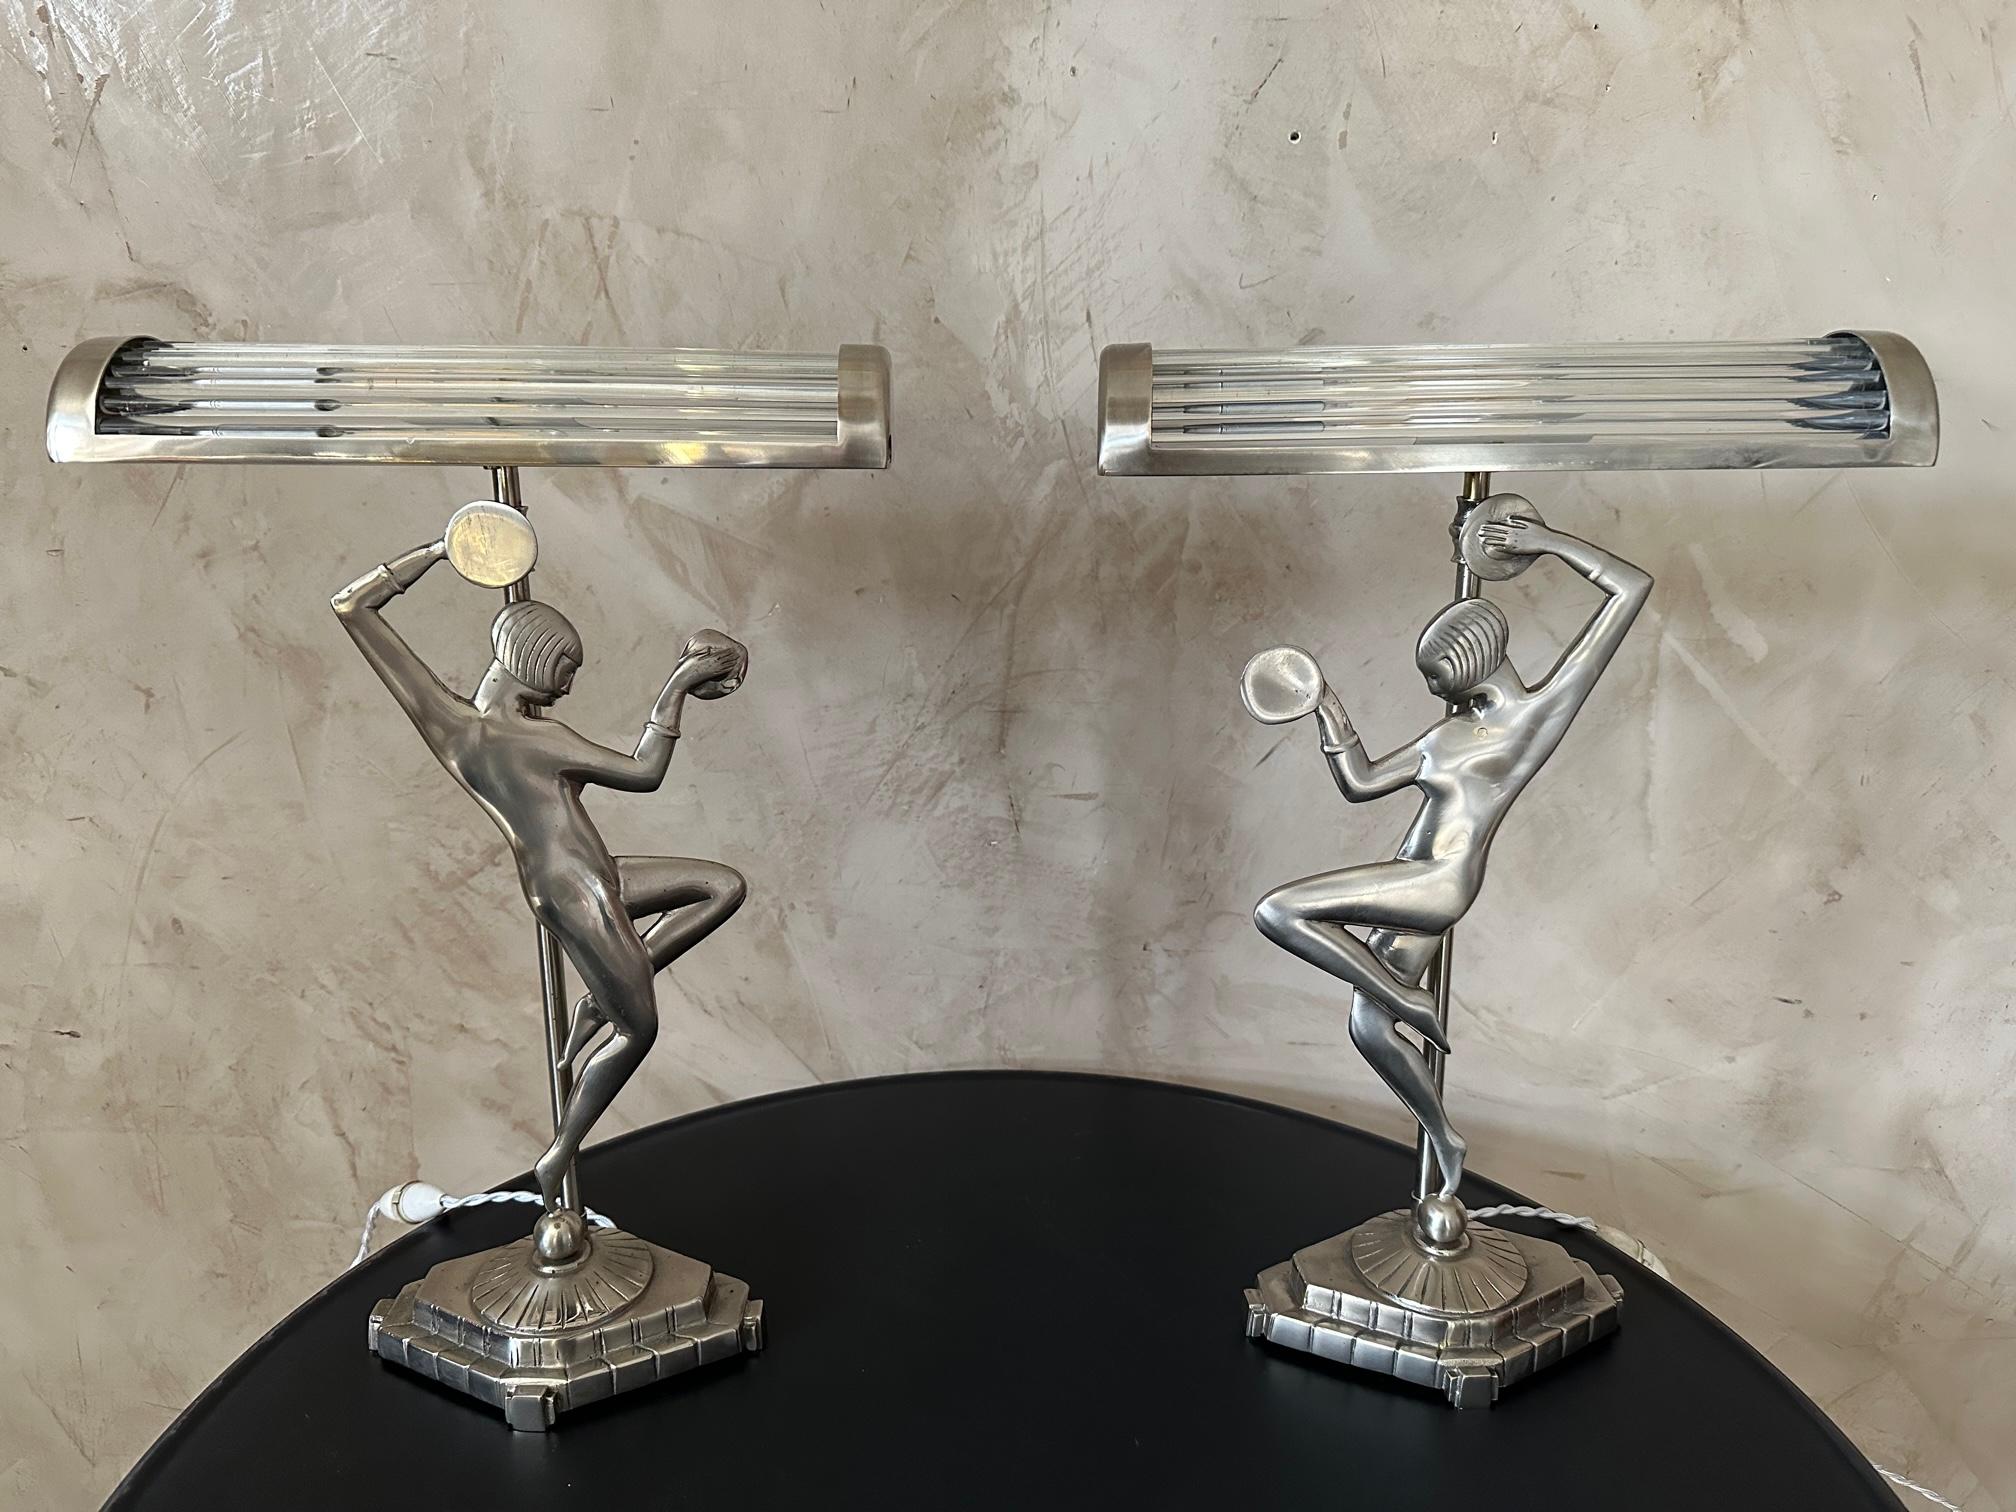 Sehr schönes Paar verchromter Art-Deco-Metalllampen, die eine tanzende Frau mit Pauken in den Händen darstellen. Vollständig restauriert, neu vernickelt und neu verkabelt. 
Einzigartiges Stück, Kreation des Glaslampenschirms.
Sehr gute Qualität und